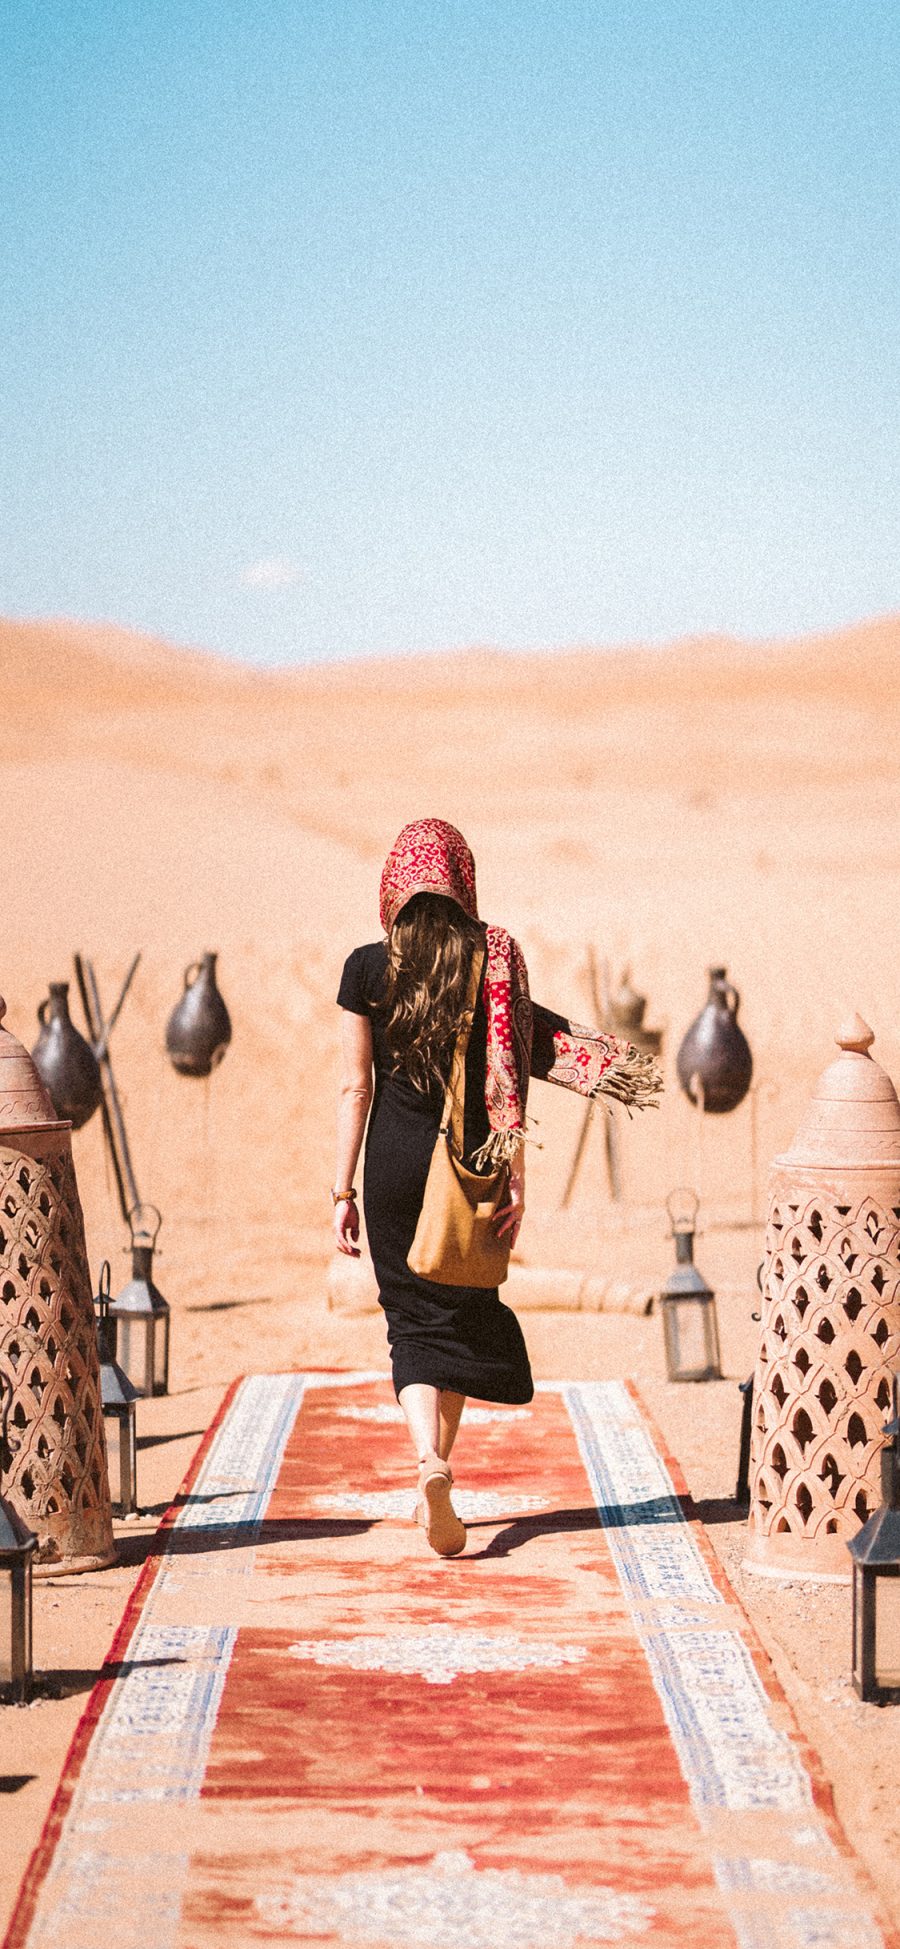 [2436×1125]沙漠 旅行 热带 背影 女子 苹果手机壁纸图片